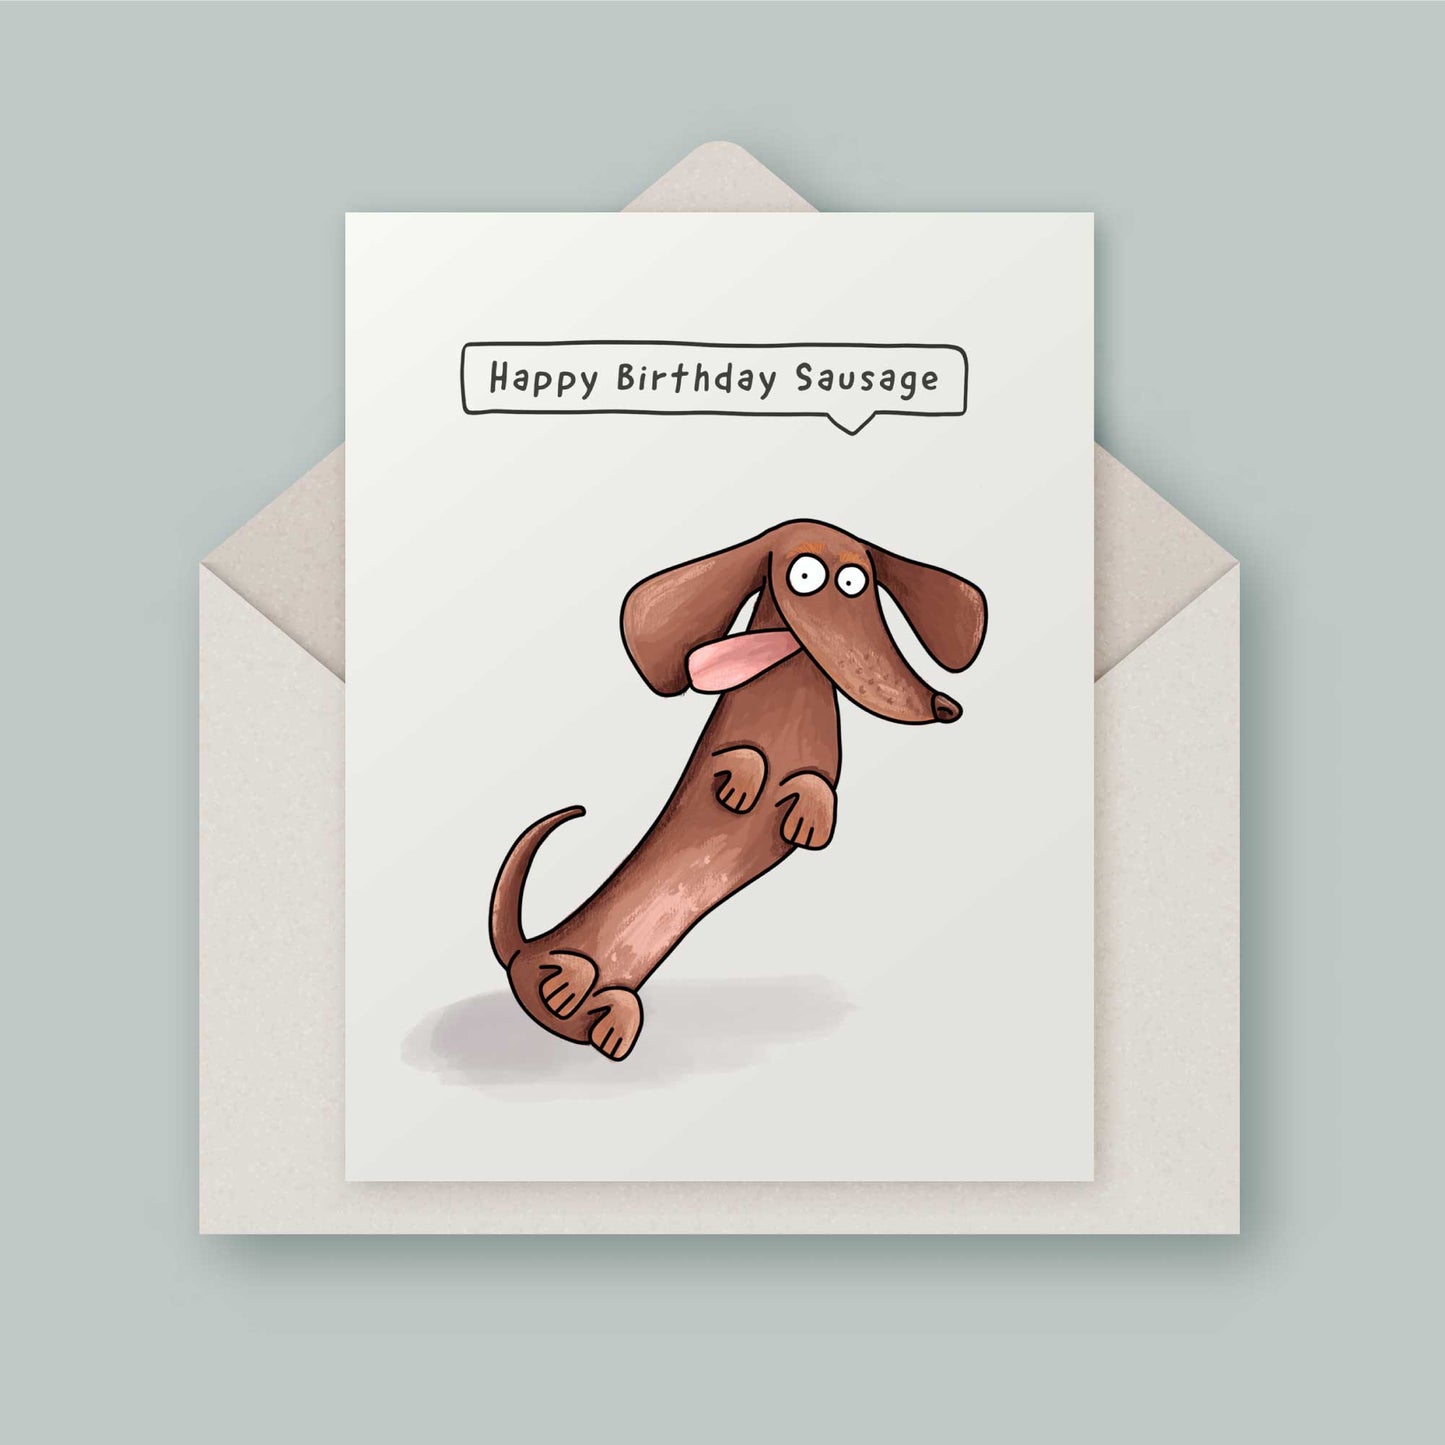 Sausage dachshund wiener dog birthday card